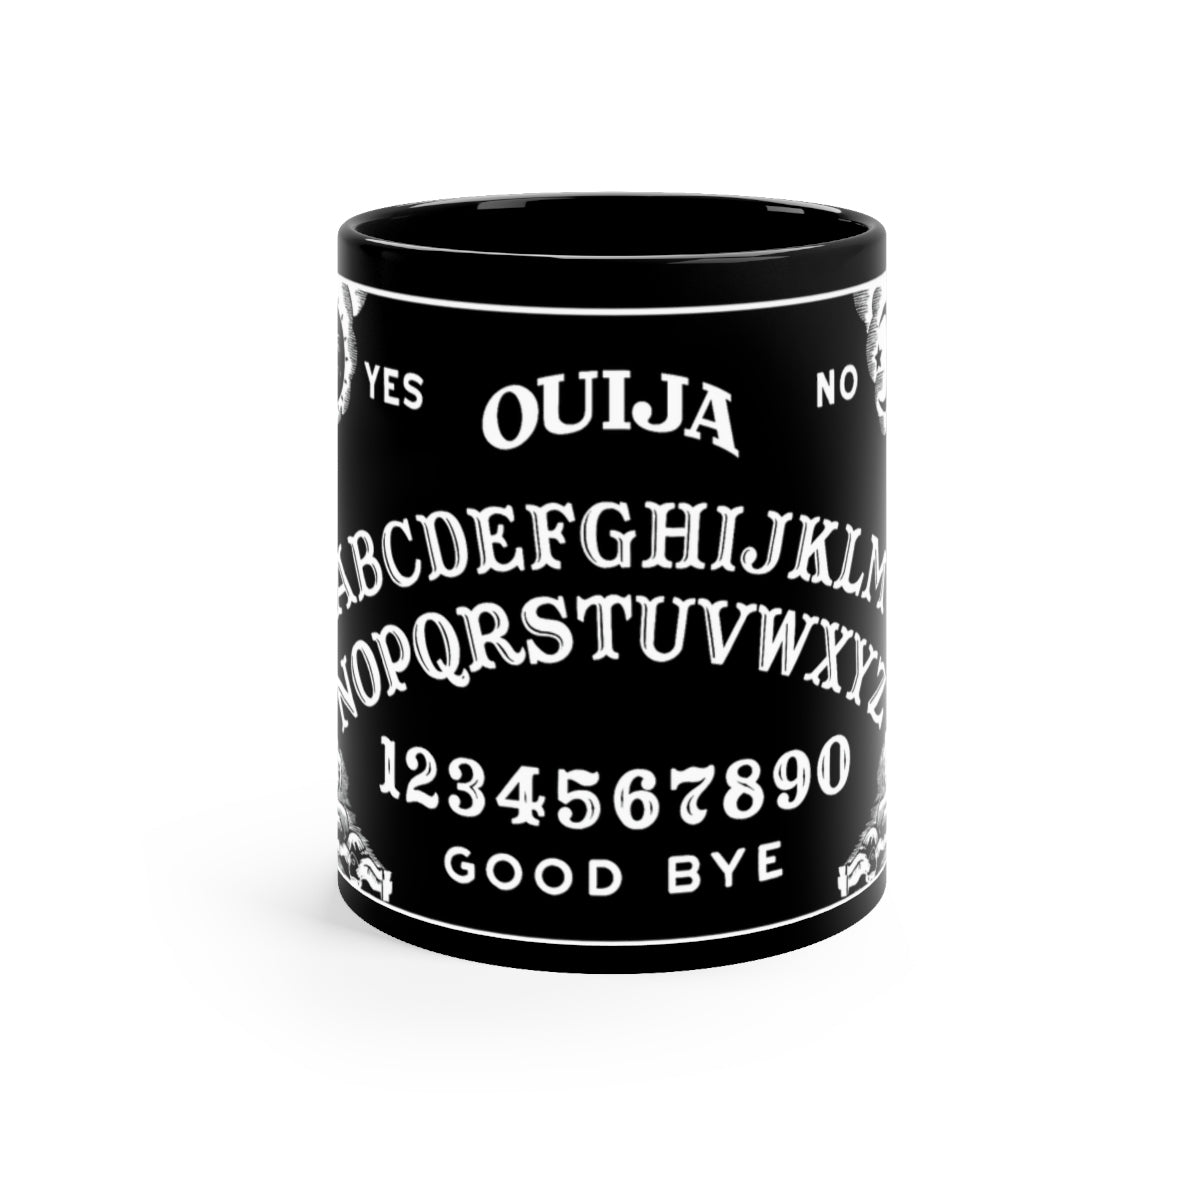 P&B Ouija Coffee Mug, 11oz Ceramic, Black Ouija Board, Dark Coffee Mug